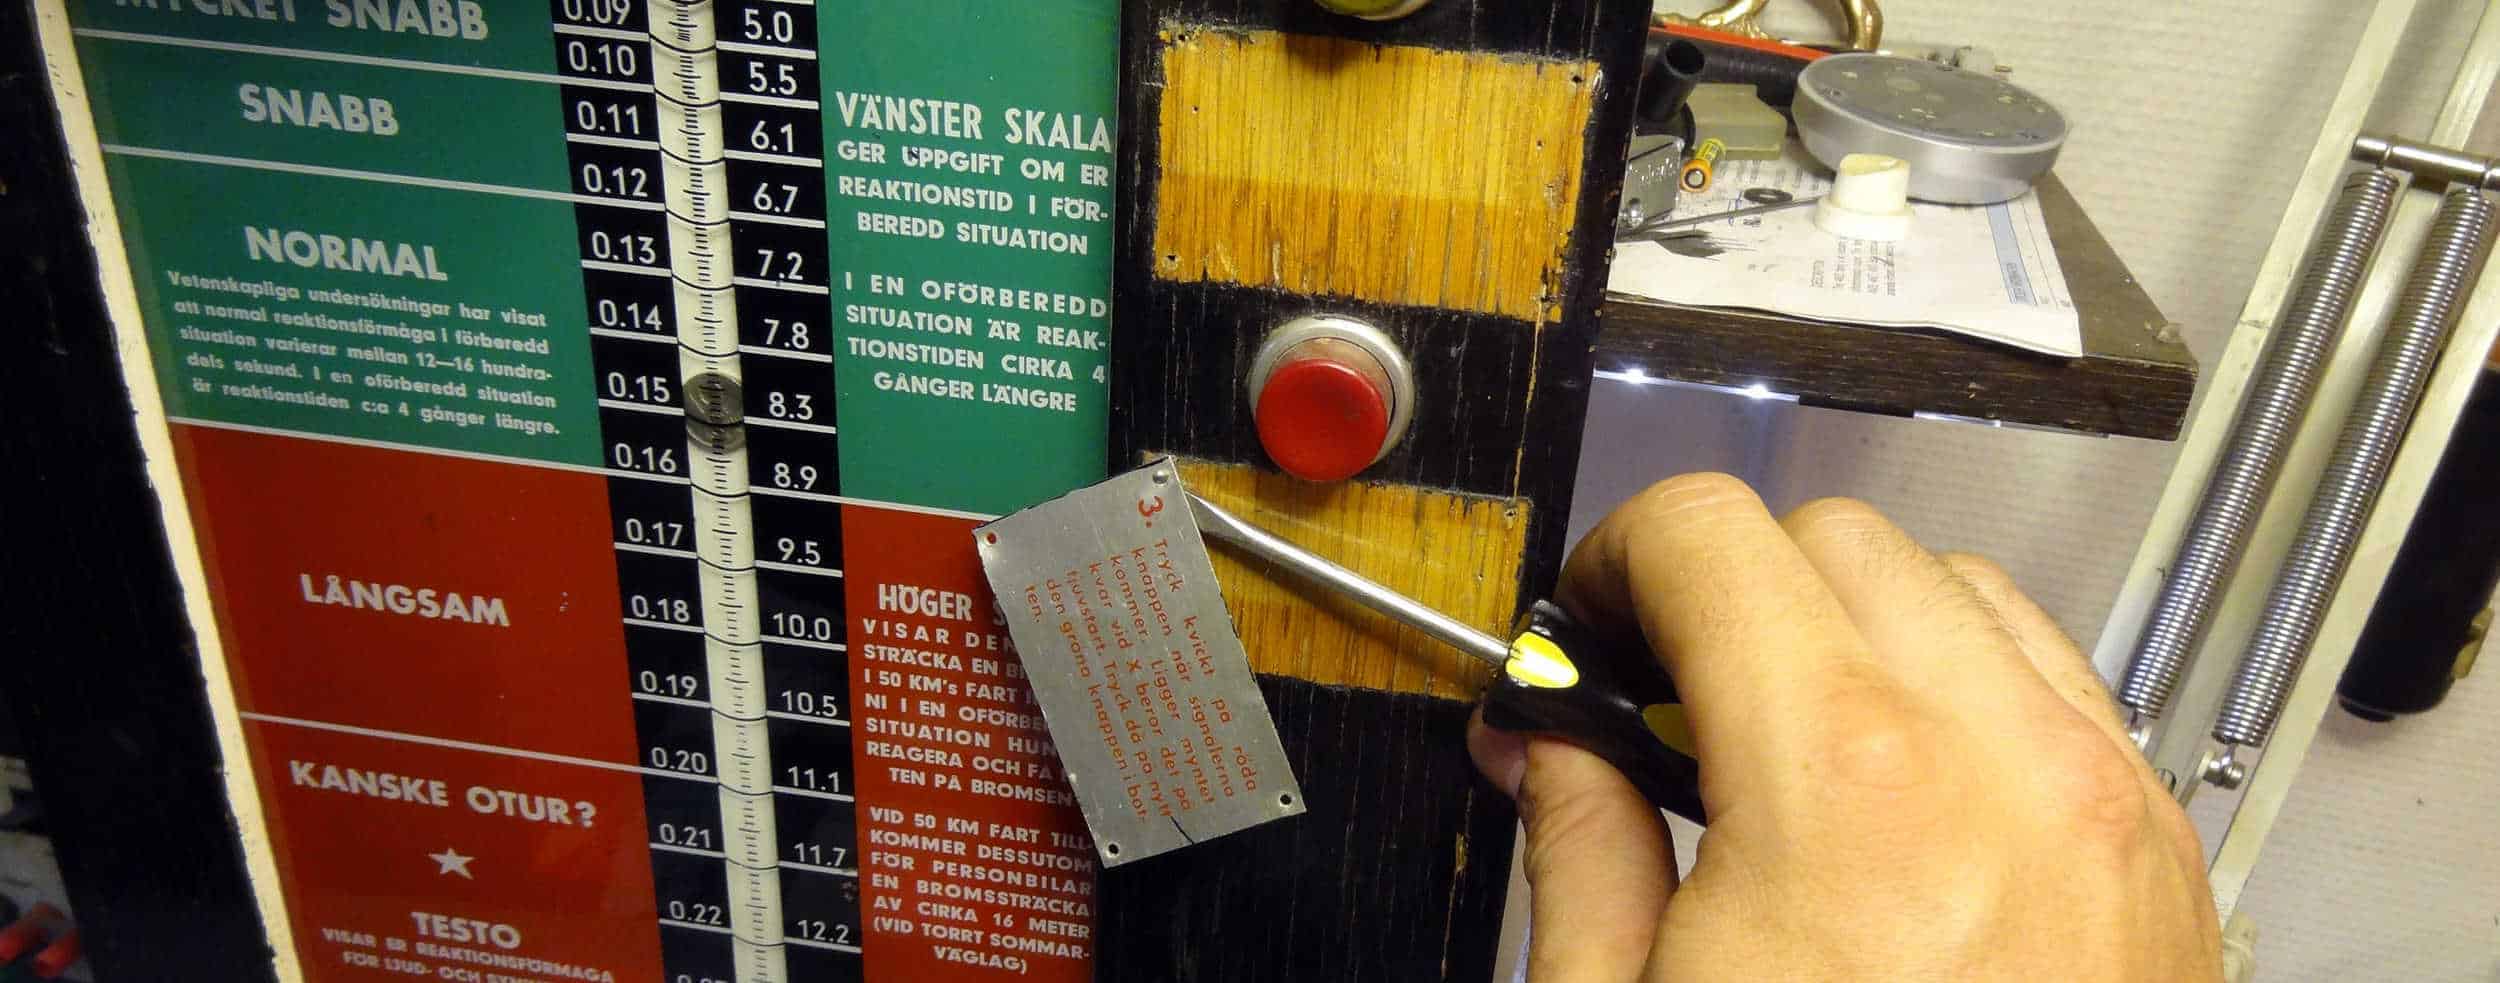 Testo automaten skilles ad, afprøves og maling strippes (2)